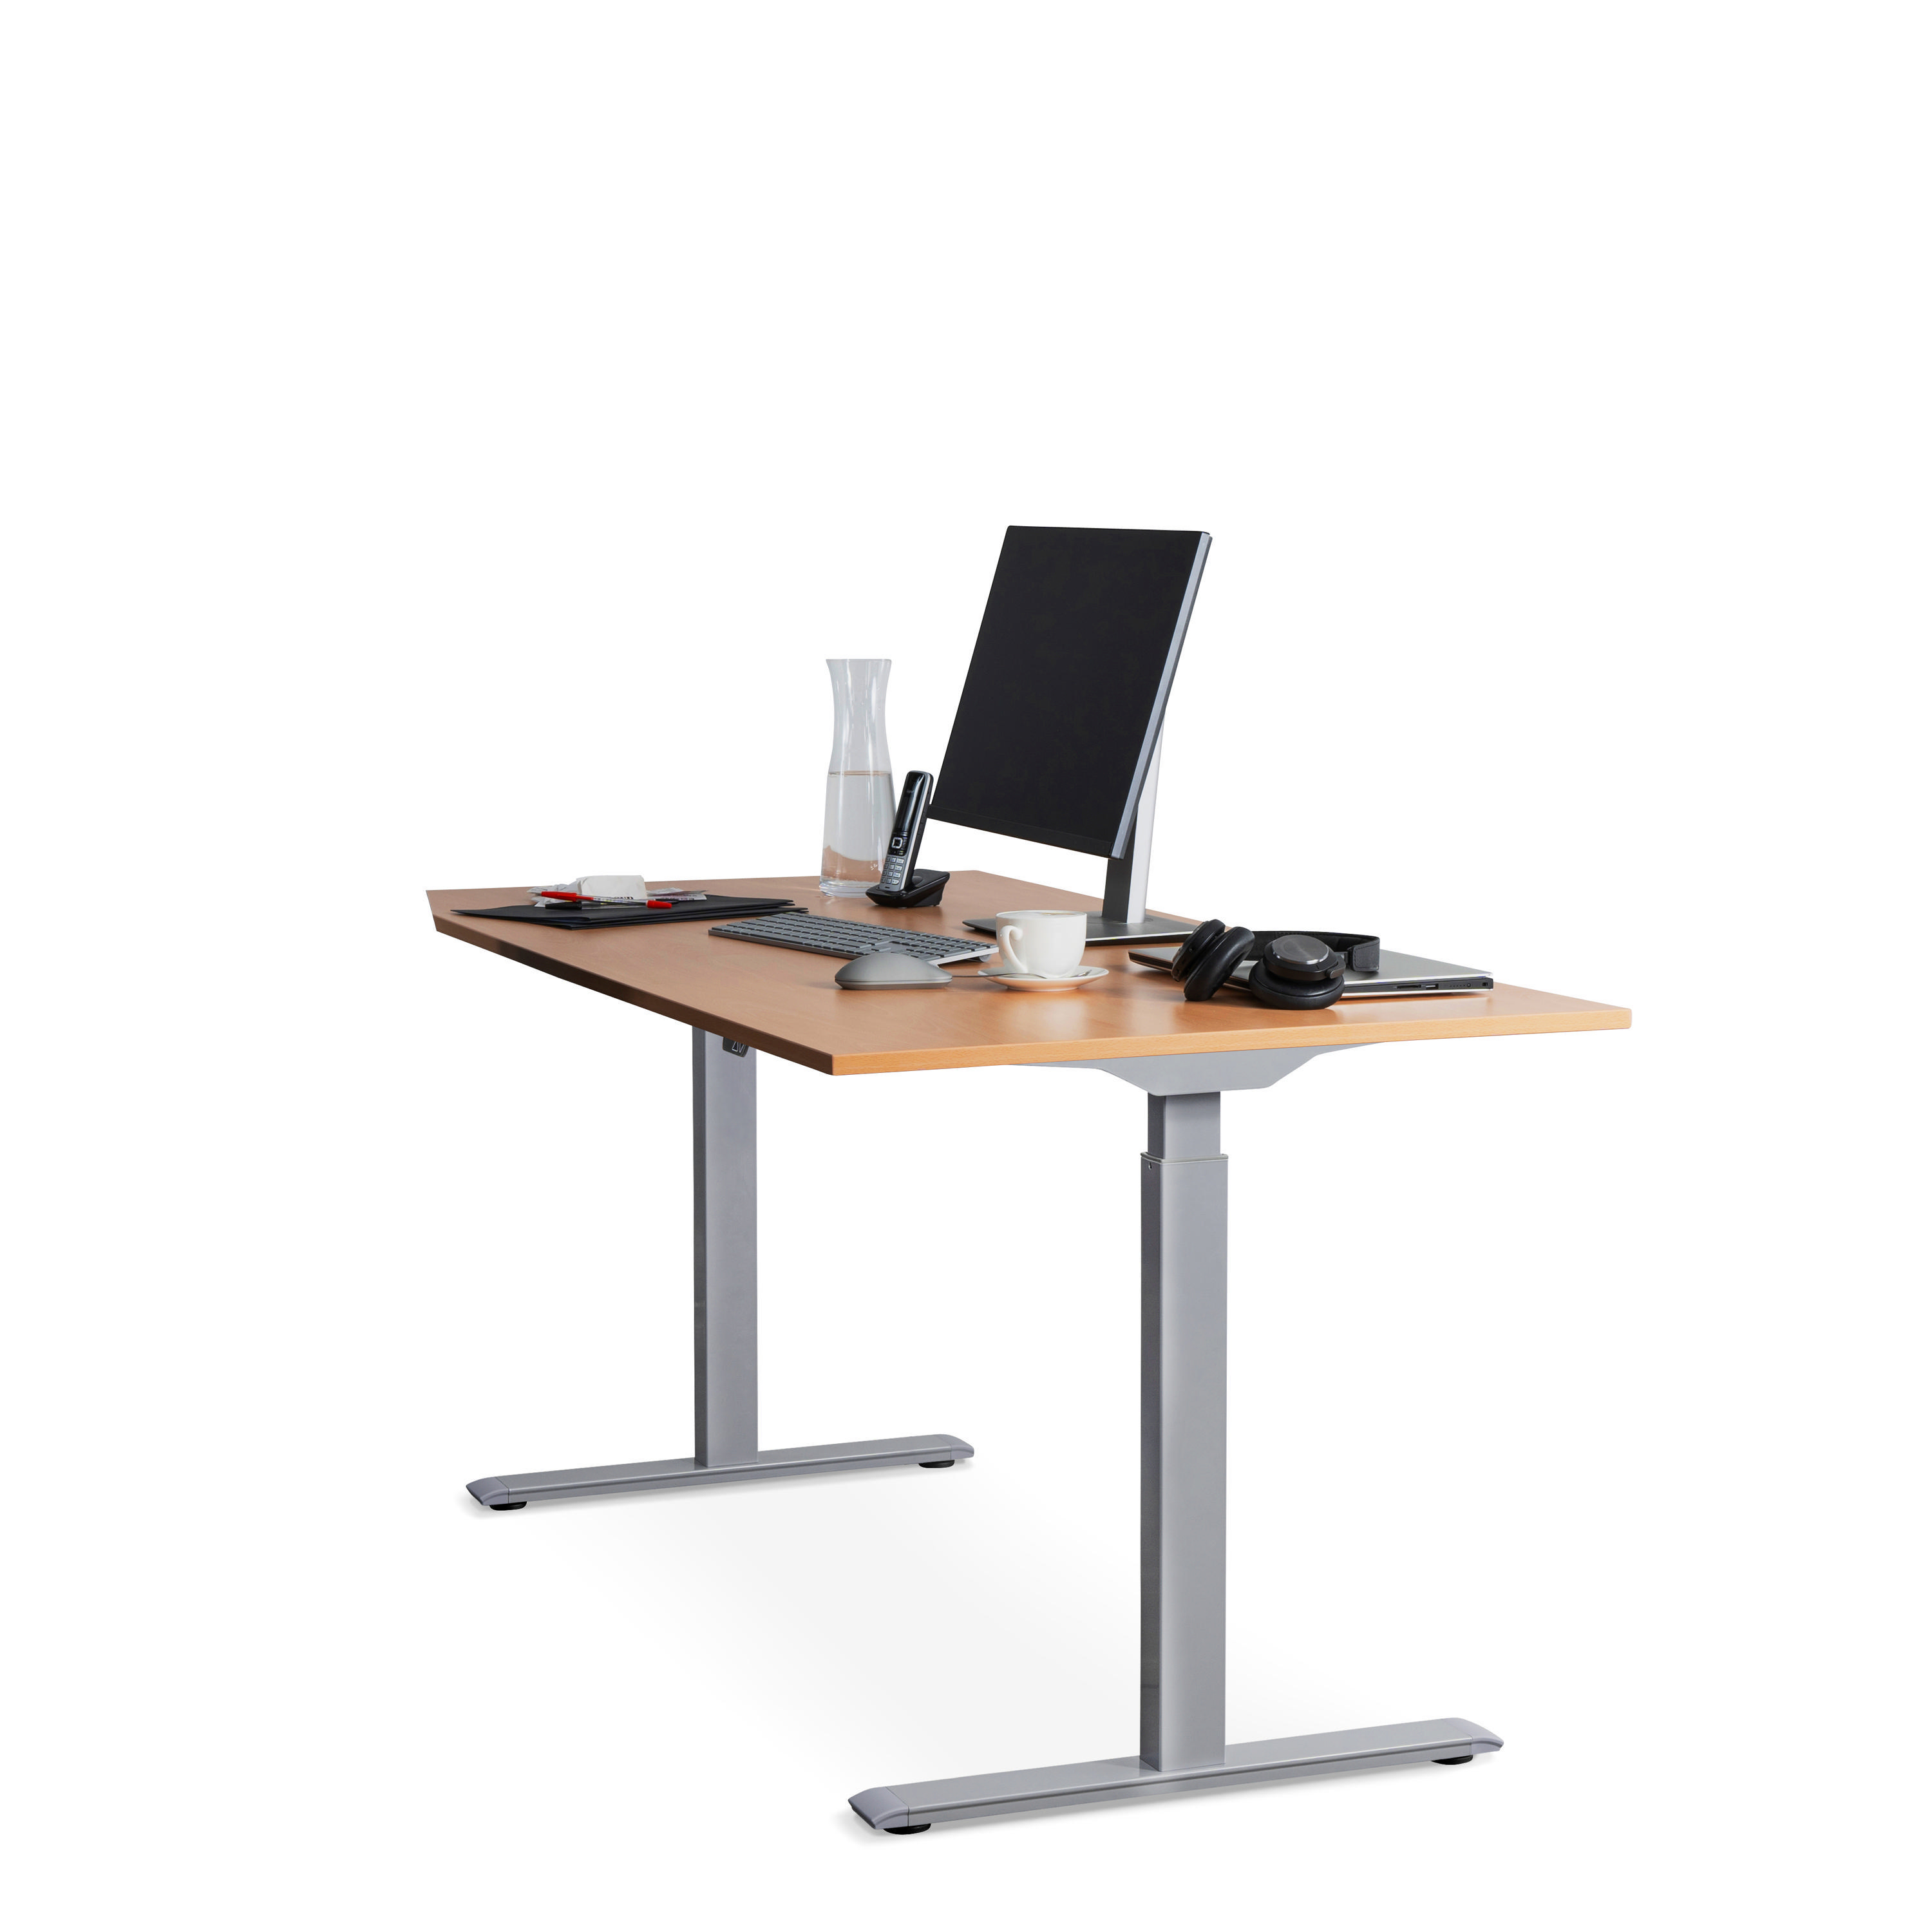 WRK21 160x80 elektronisch cm höhenverstellbarer Buche Steh-Sitz Tischplatte: Schreibtisch, Grau Tischgestell: